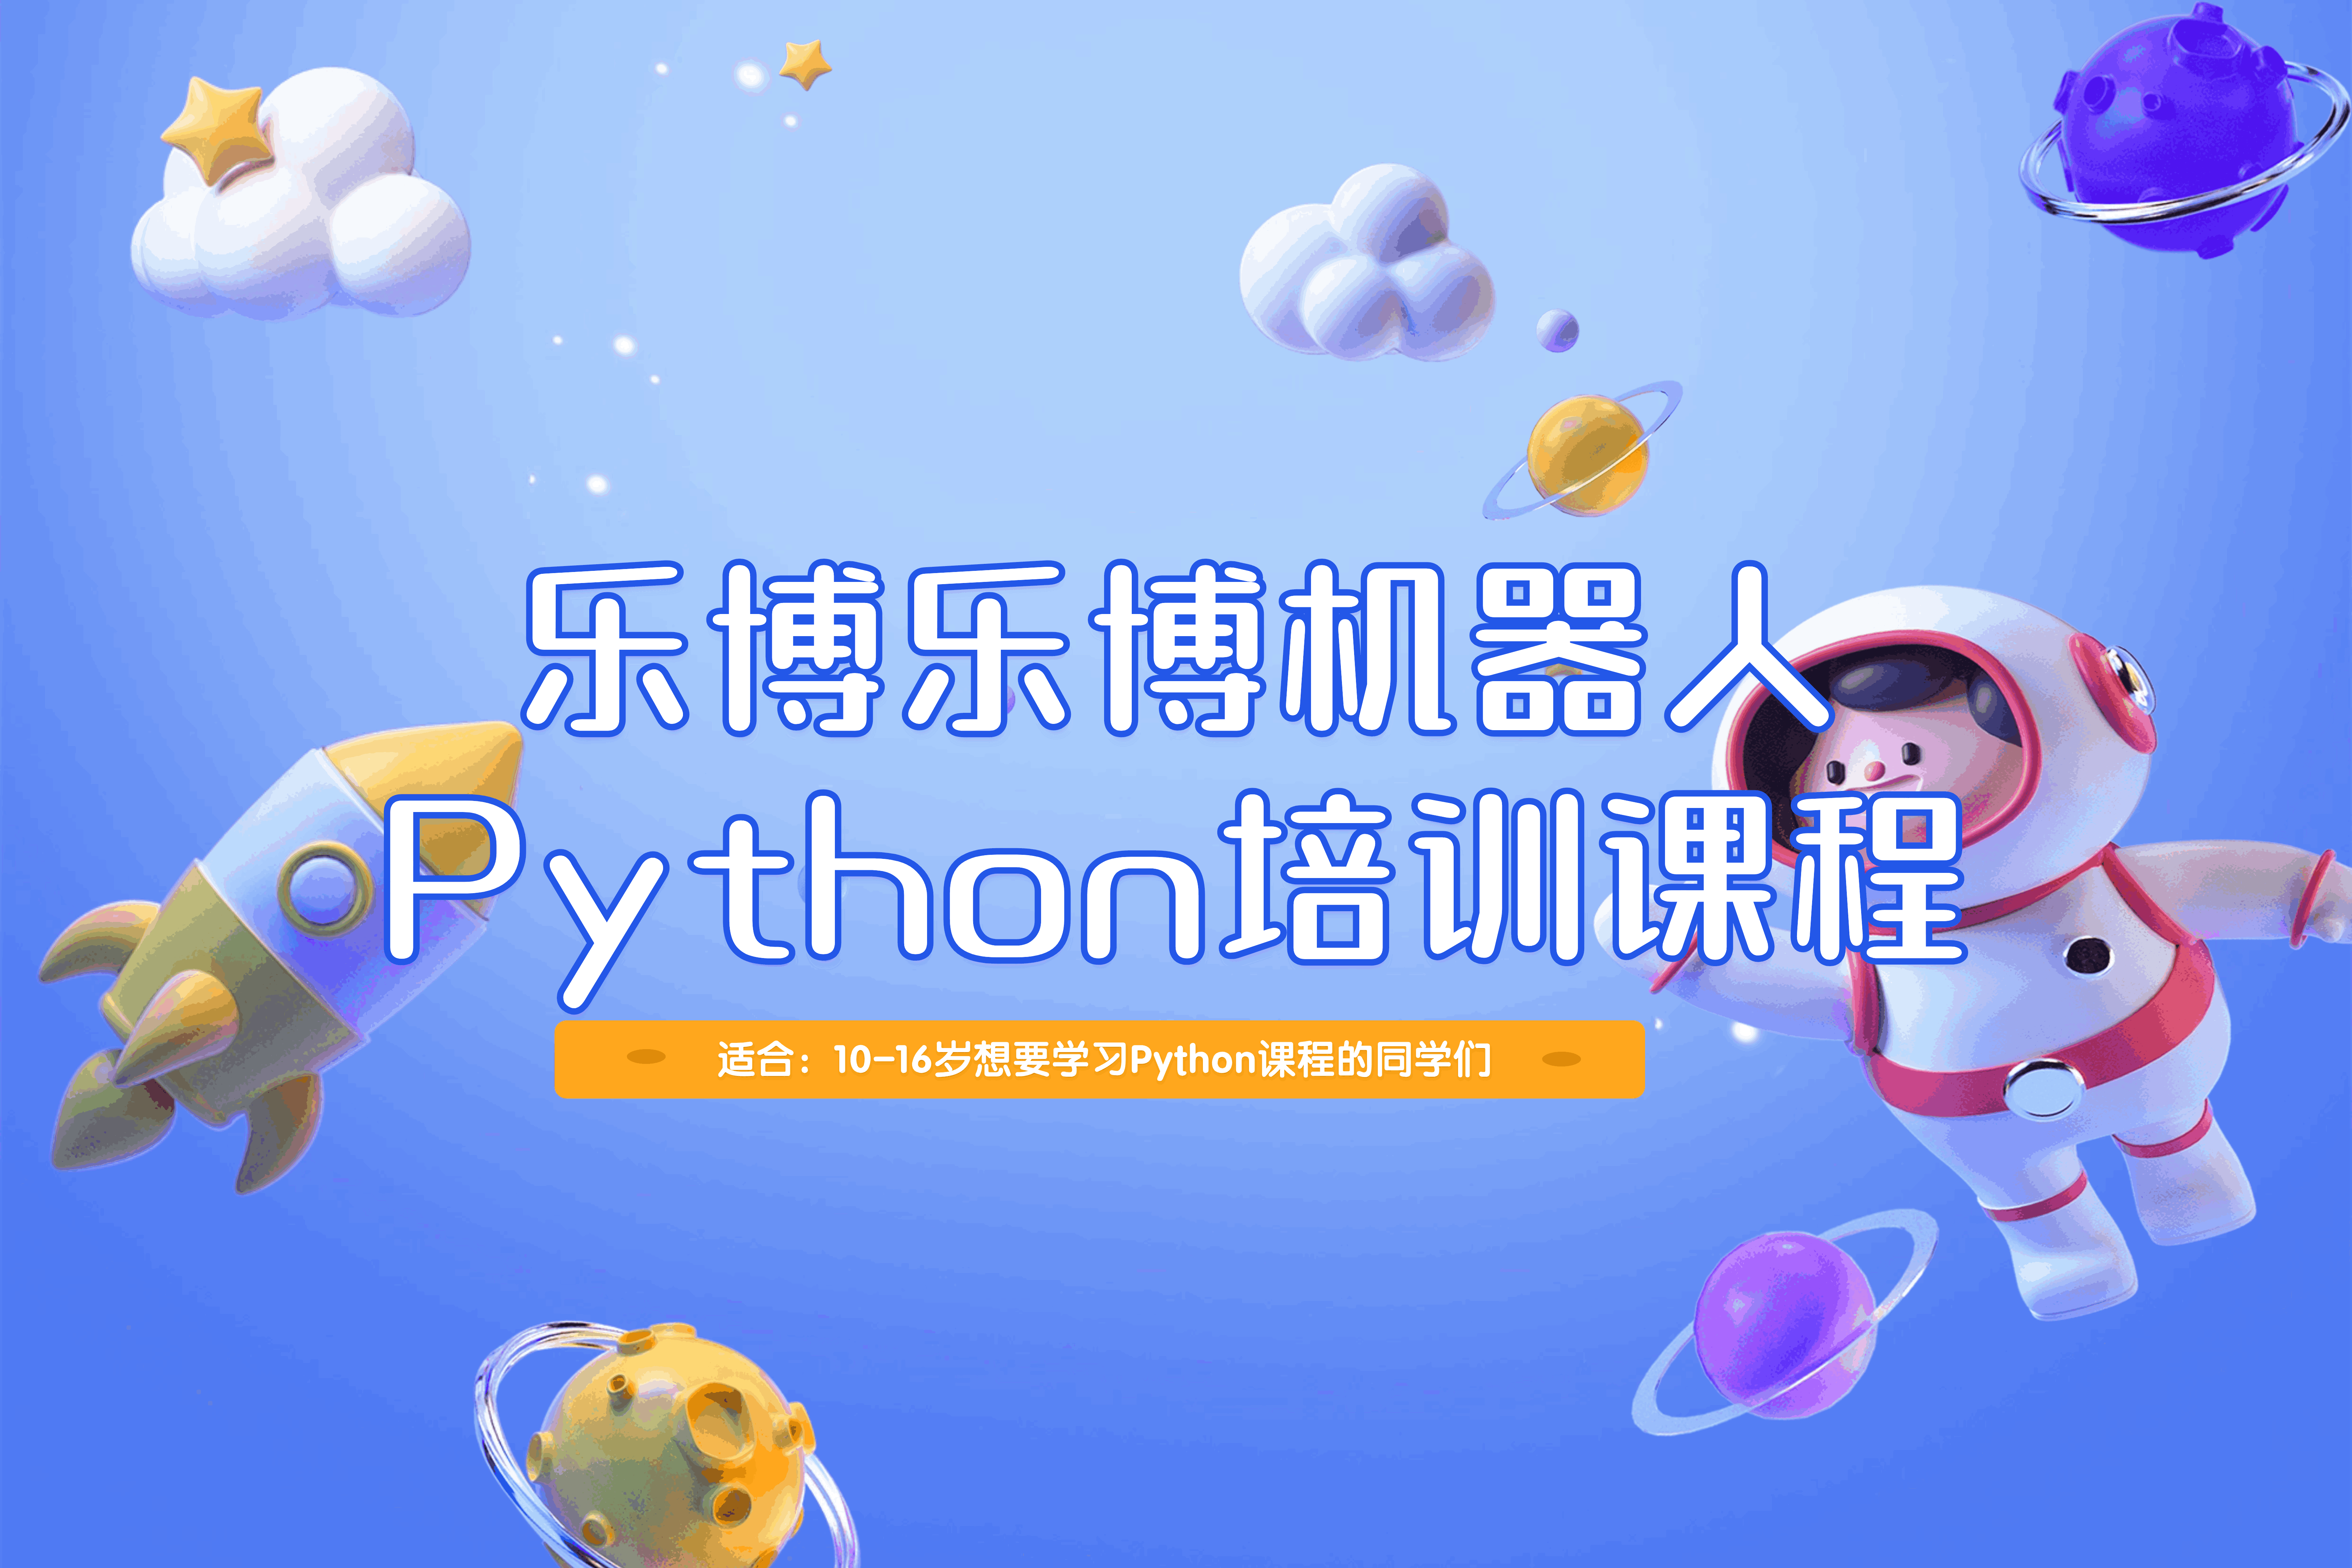 重庆乐博乐博机器人重庆乐博乐博Python培训课程图片